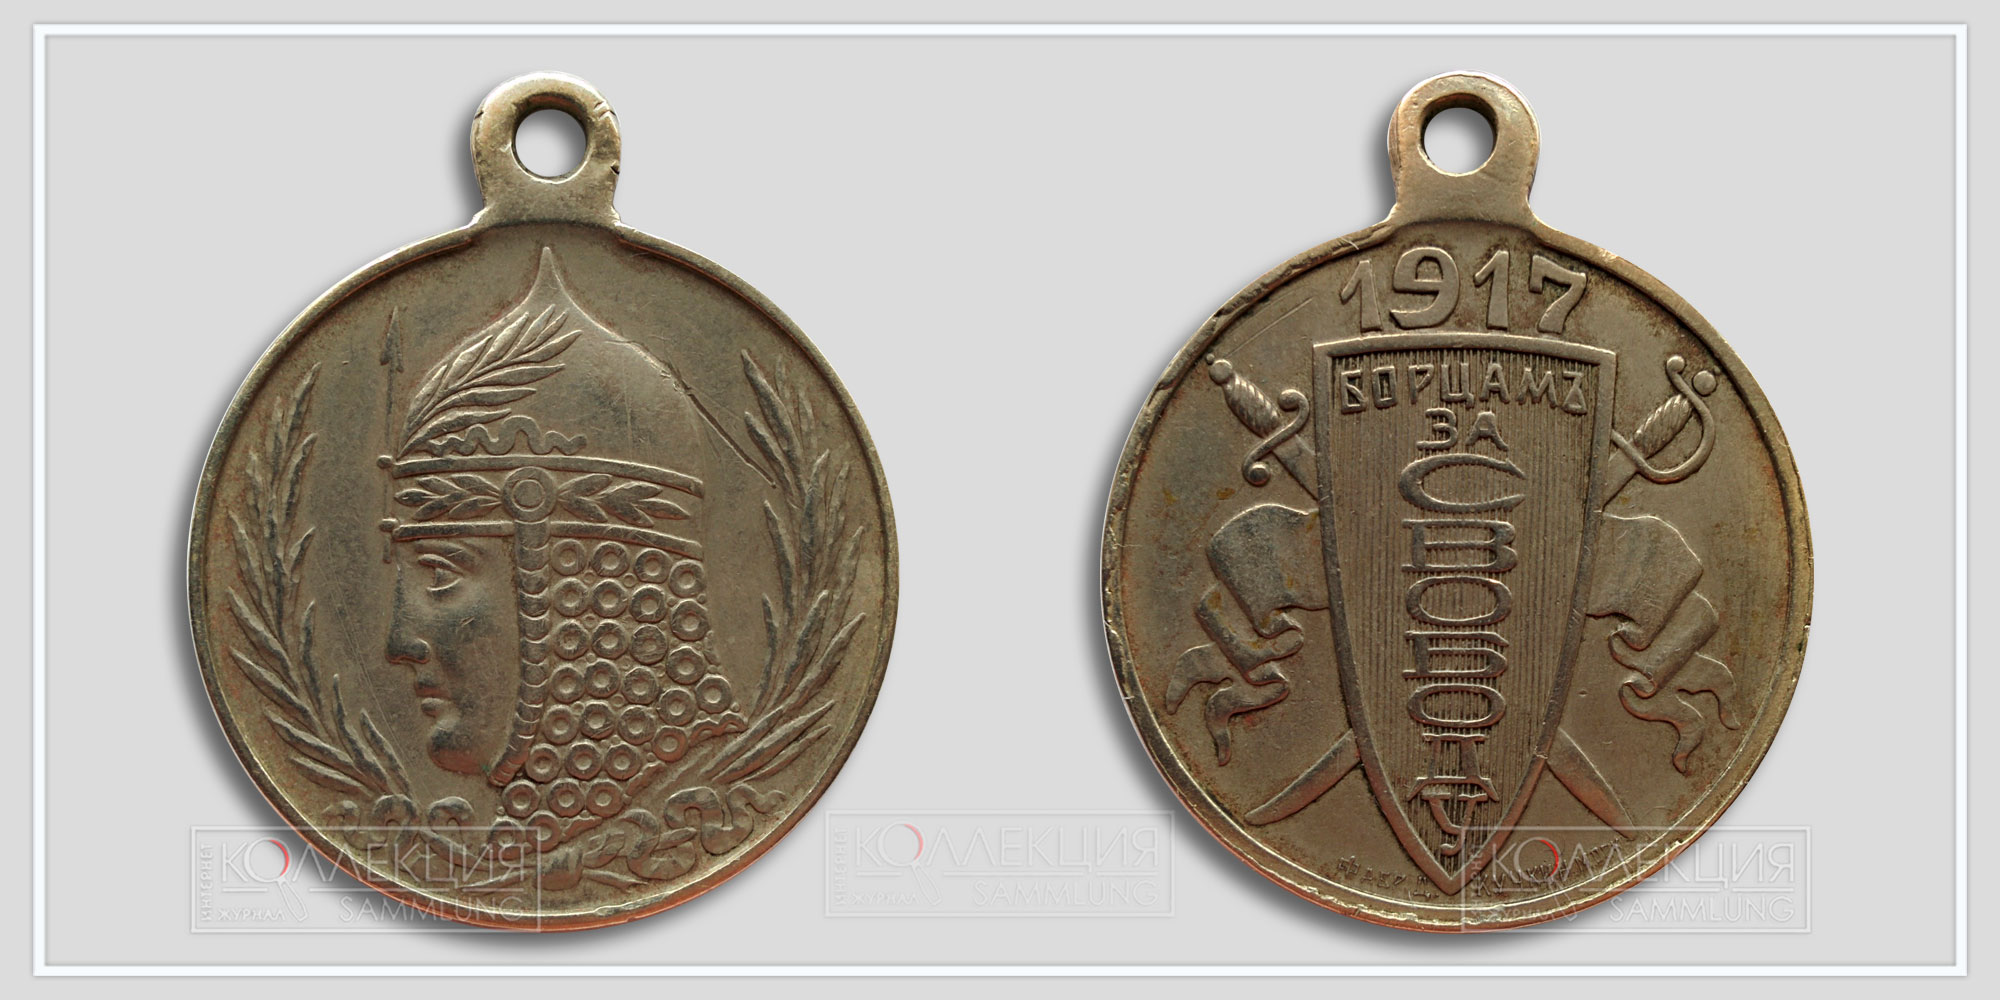 Медаль (жетон) «Борцам за свободу» 1917 Временное правительство (Из архива Фалеристика.инфо. Разместил коллега Carter Slade)